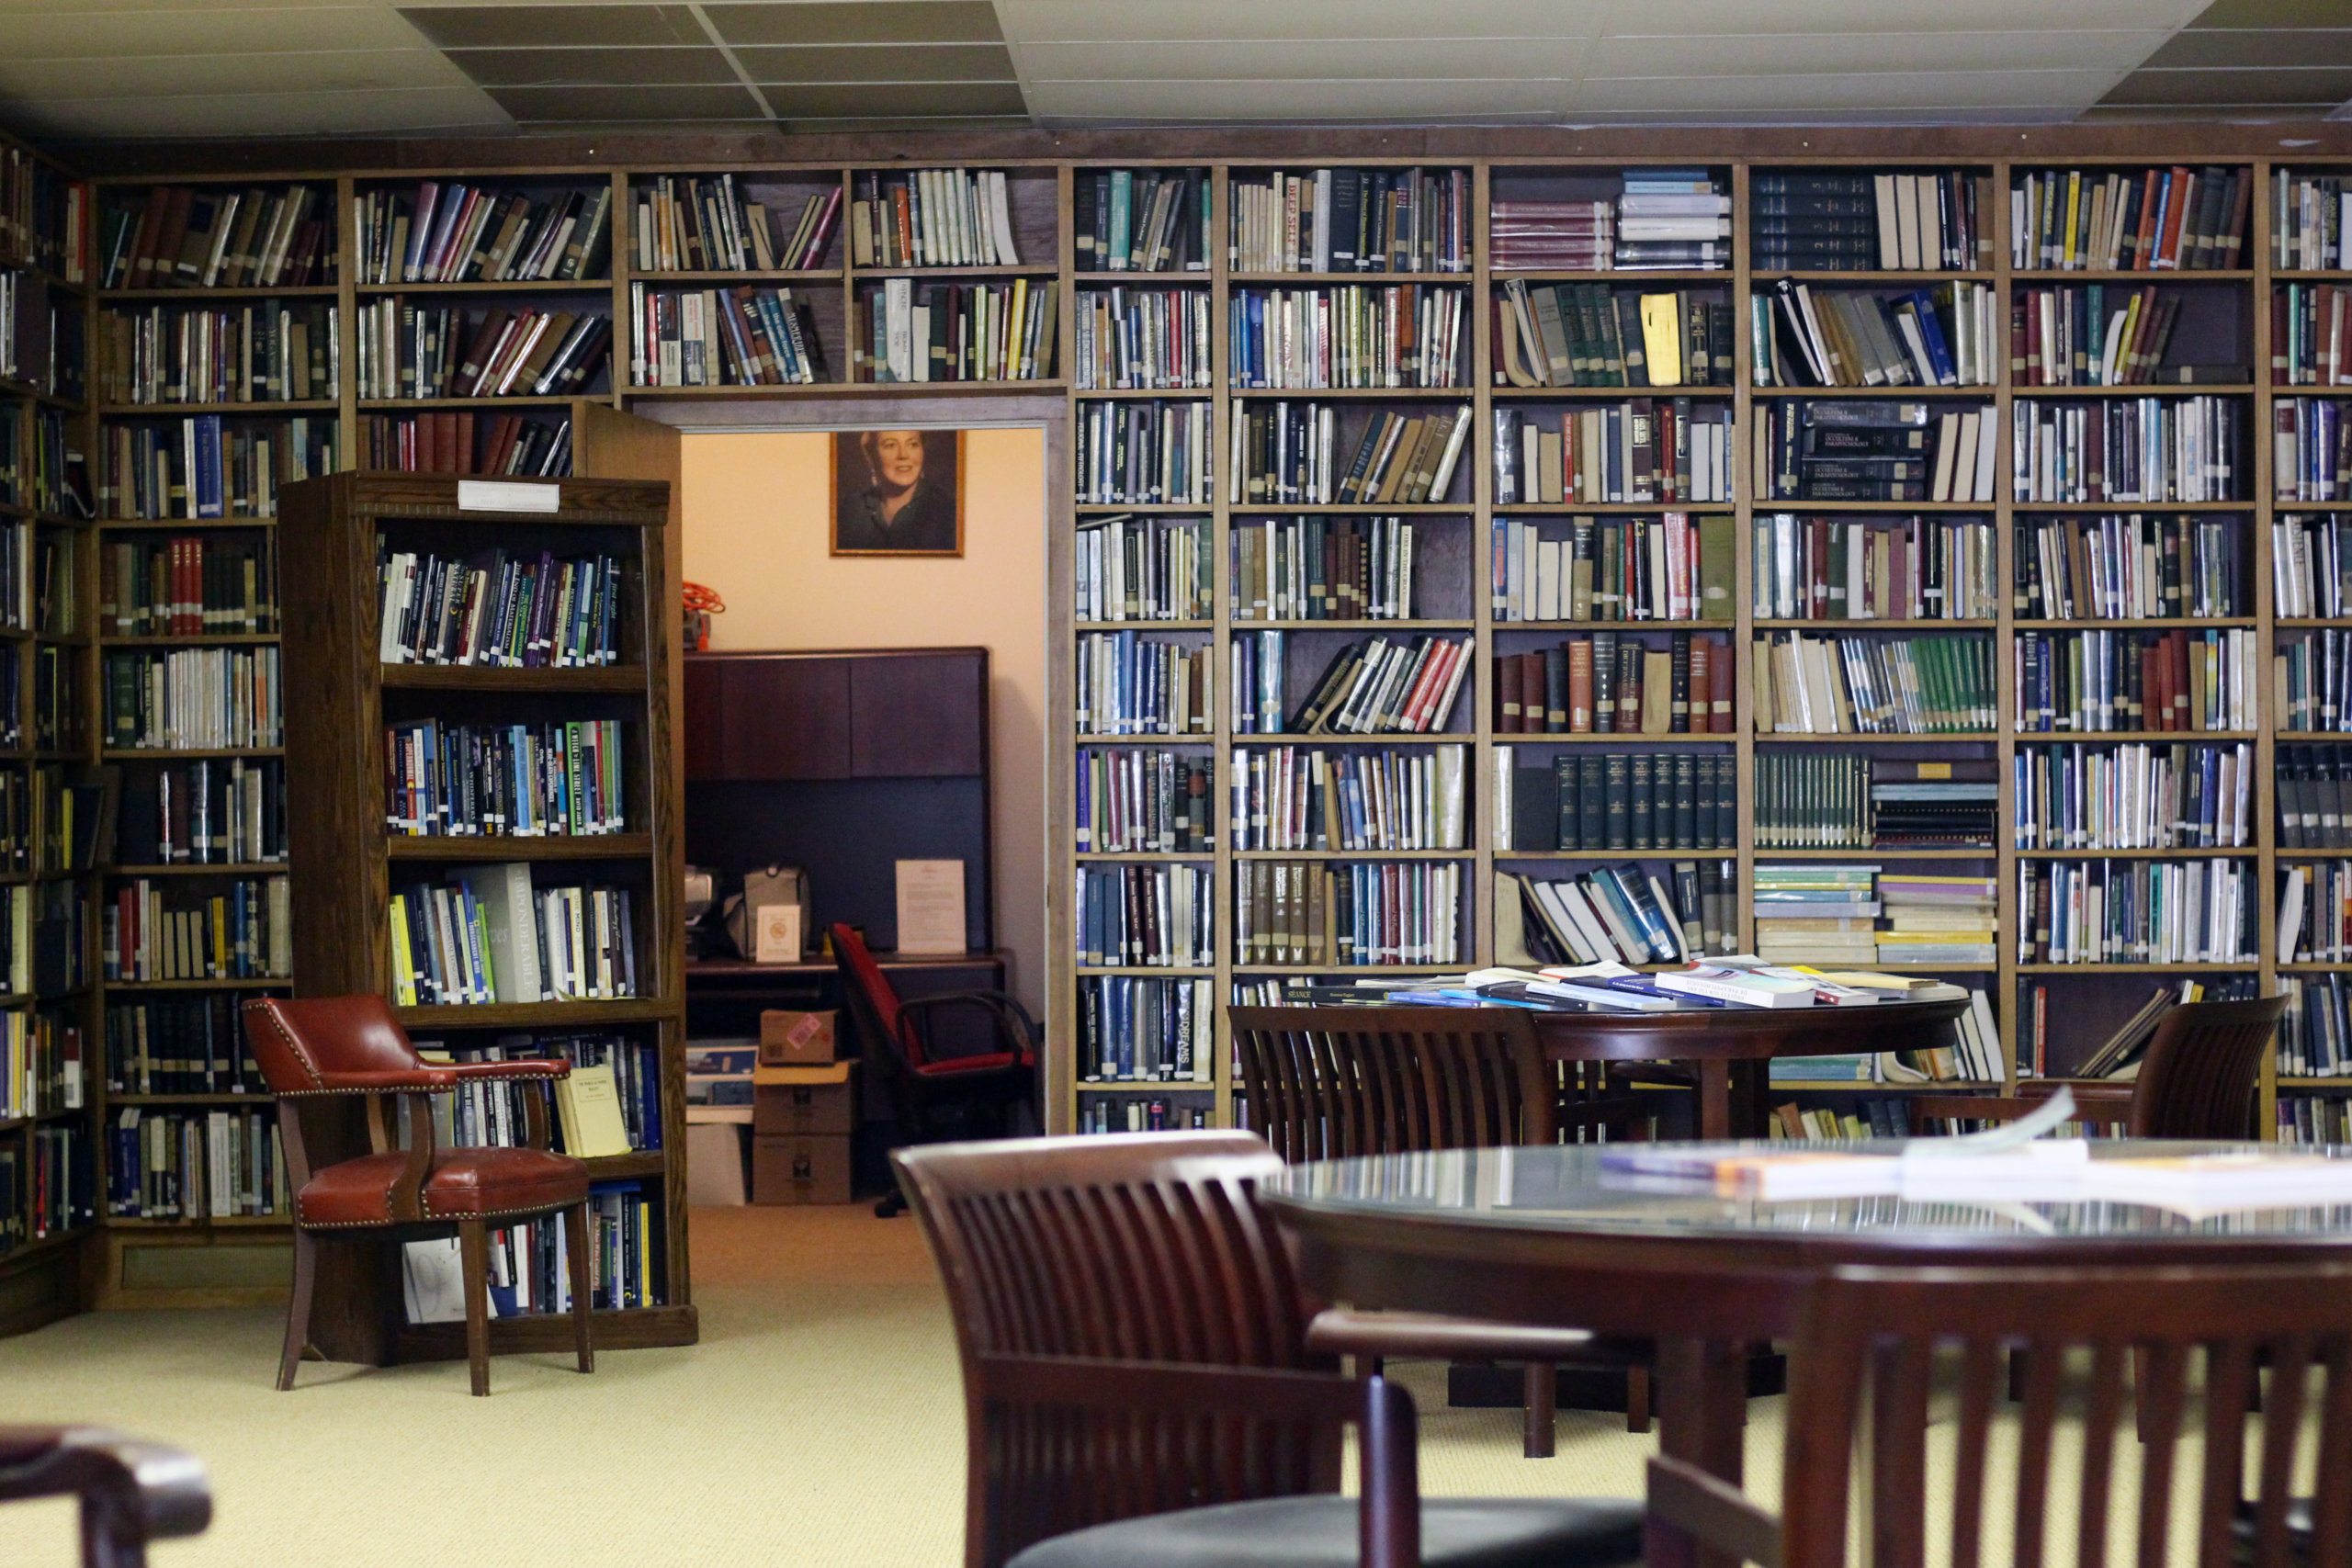 Inside the Eileen J. Garrett Library